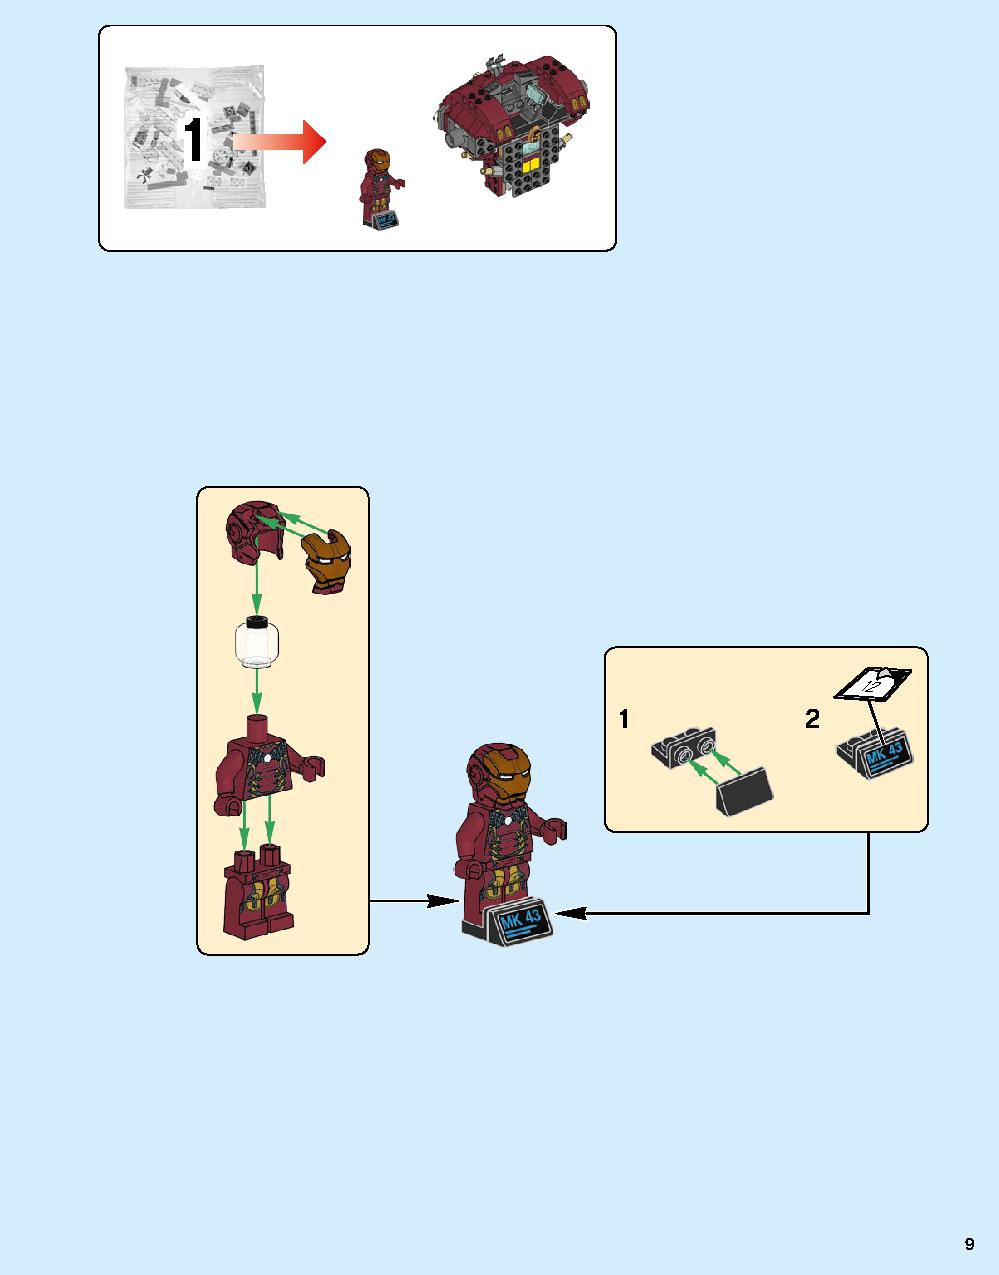 어벤져스 헐크버스터: 울트론 에디션 76105 레고 세트 제품정보 레고 조립설명서 9 page